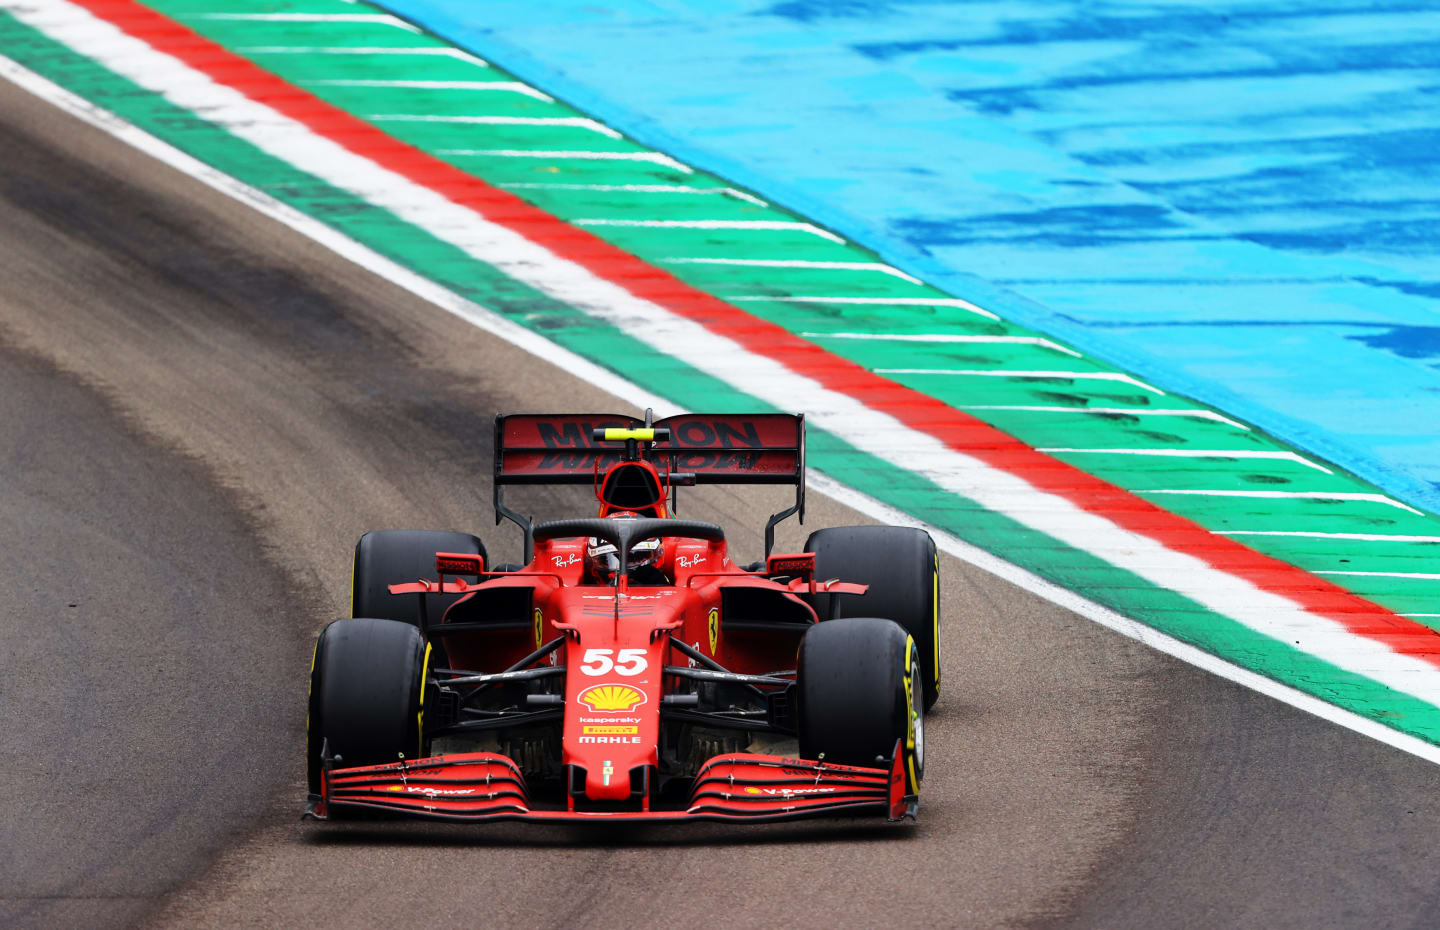 IMOLA, ITALY - APRIL 18: Carlos Sainz of Spain driving the (55) Scuderia Ferrari SF21 on track